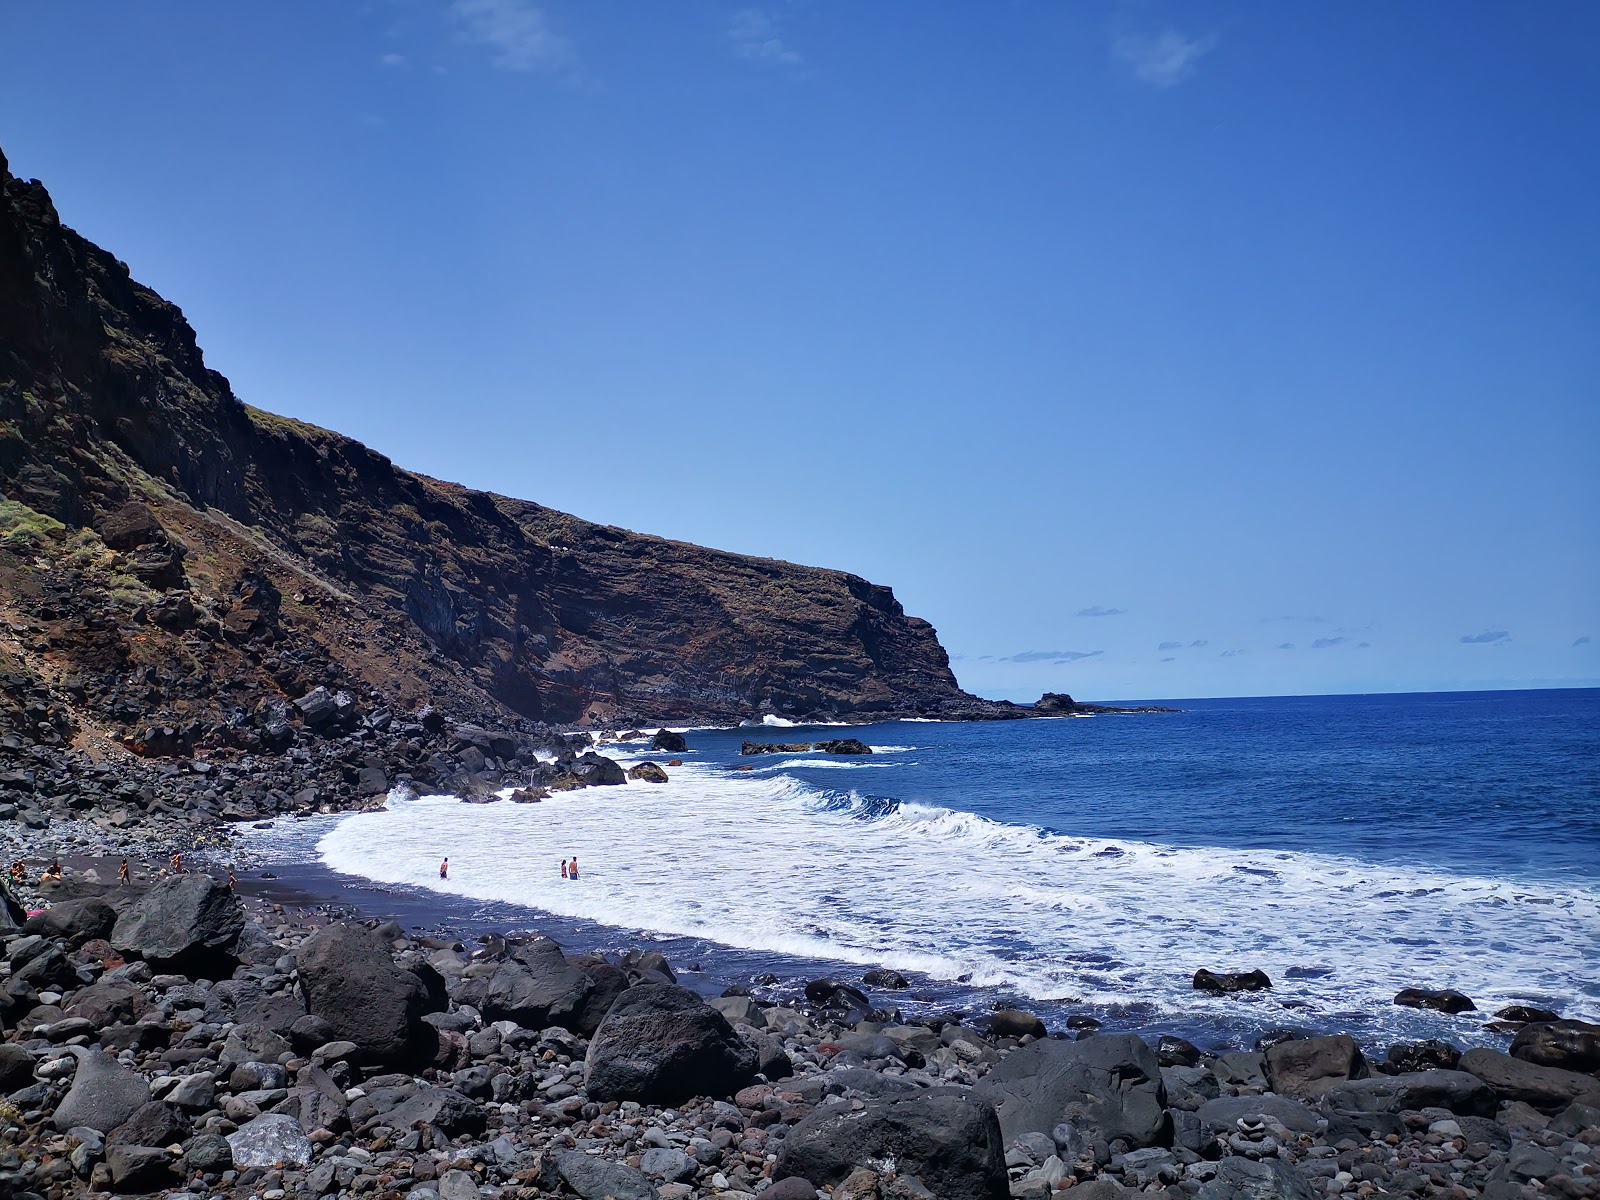 Fotografie cu Playa de Callejoncito II cu o suprafață de nisip alb și roci